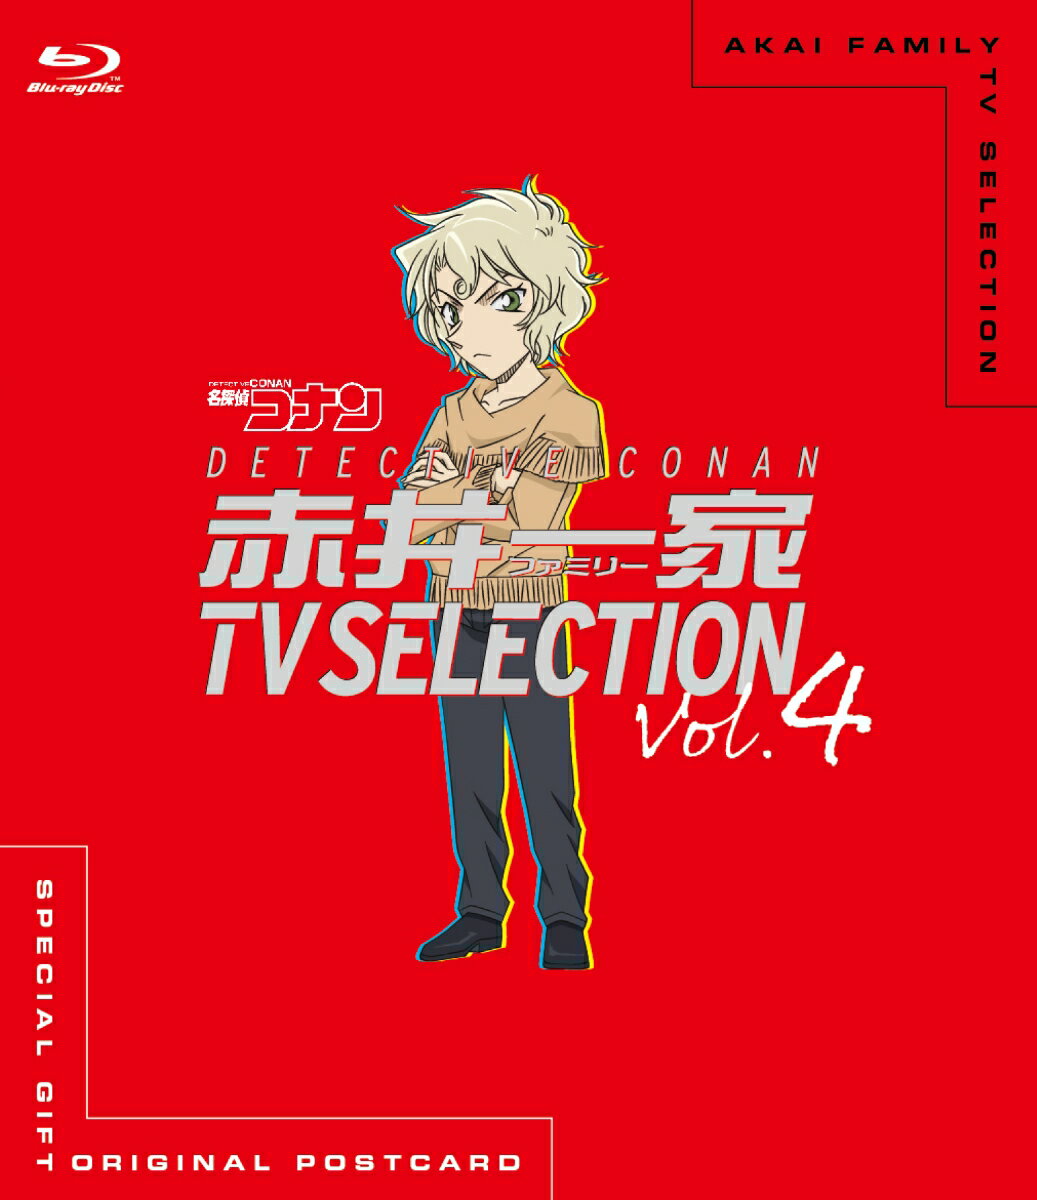 名探偵コナン 赤井一家TV Selection Vol.4【Blu-ray】